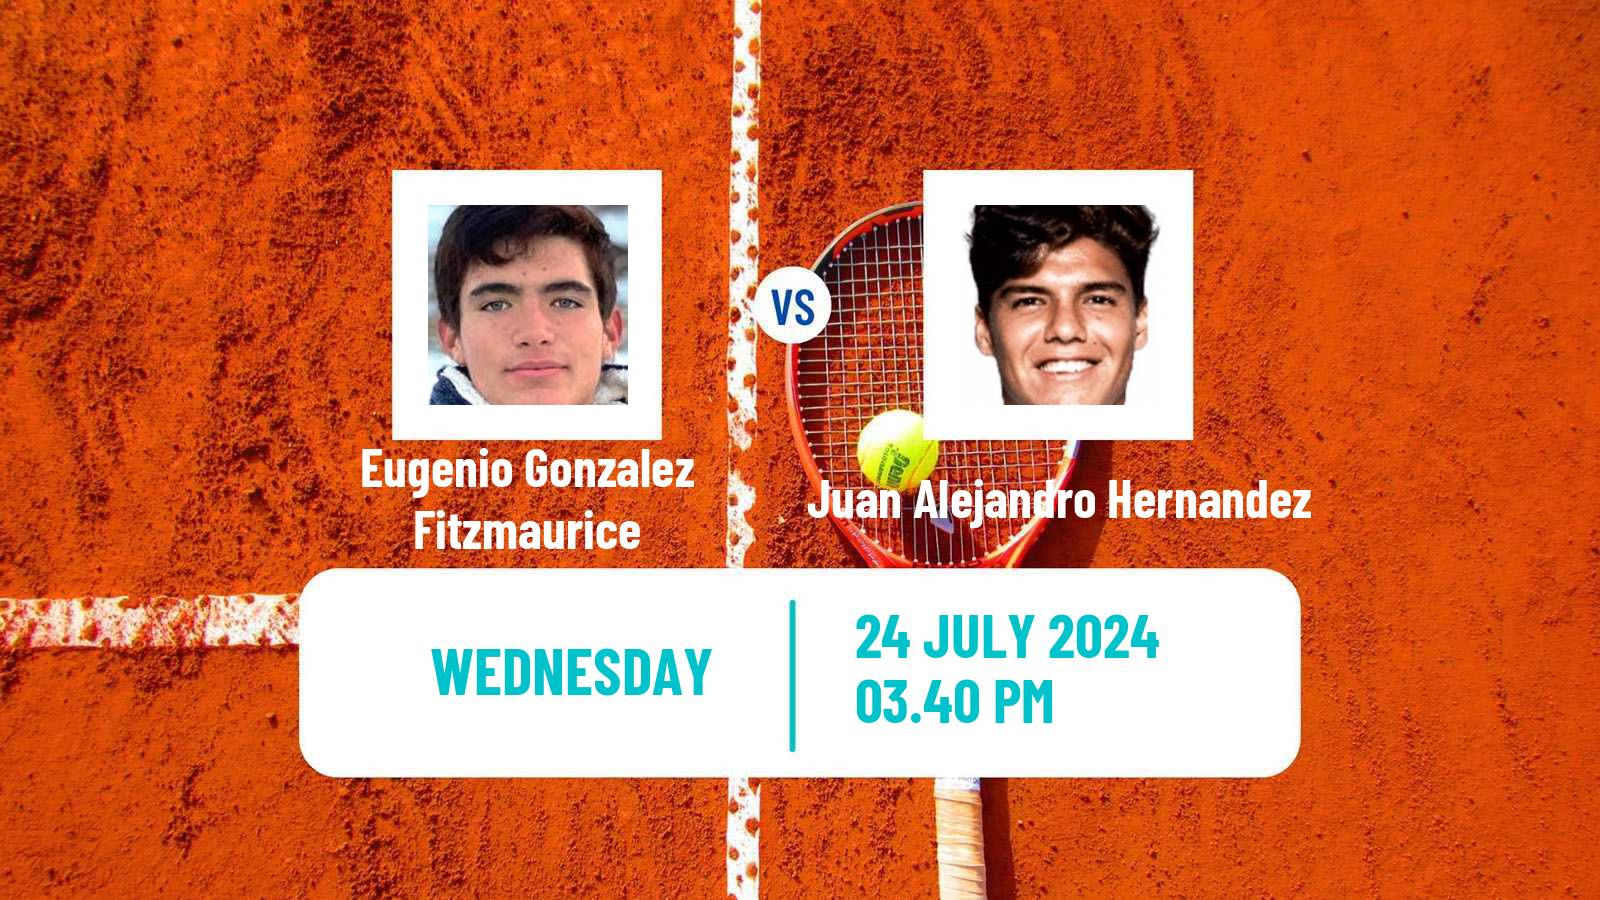 Tennis ITF M15 Huamantla 2 Men Eugenio Gonzalez Fitzmaurice - Juan Alejandro Hernandez